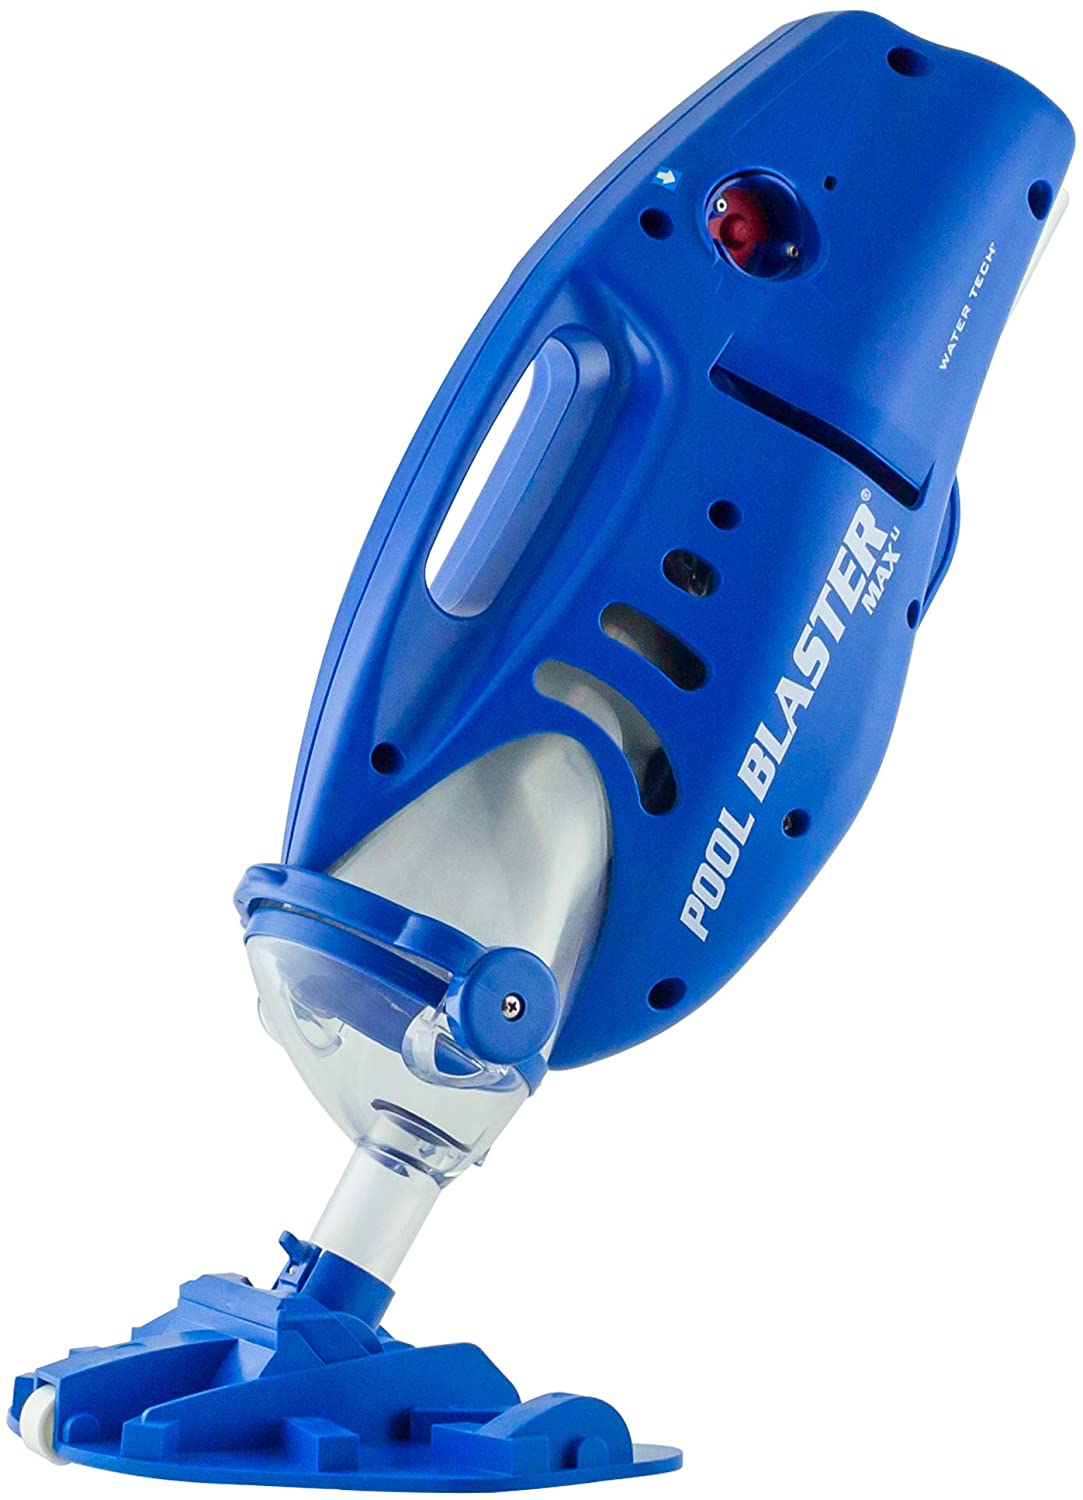  a blue pool vacuum that is handheld